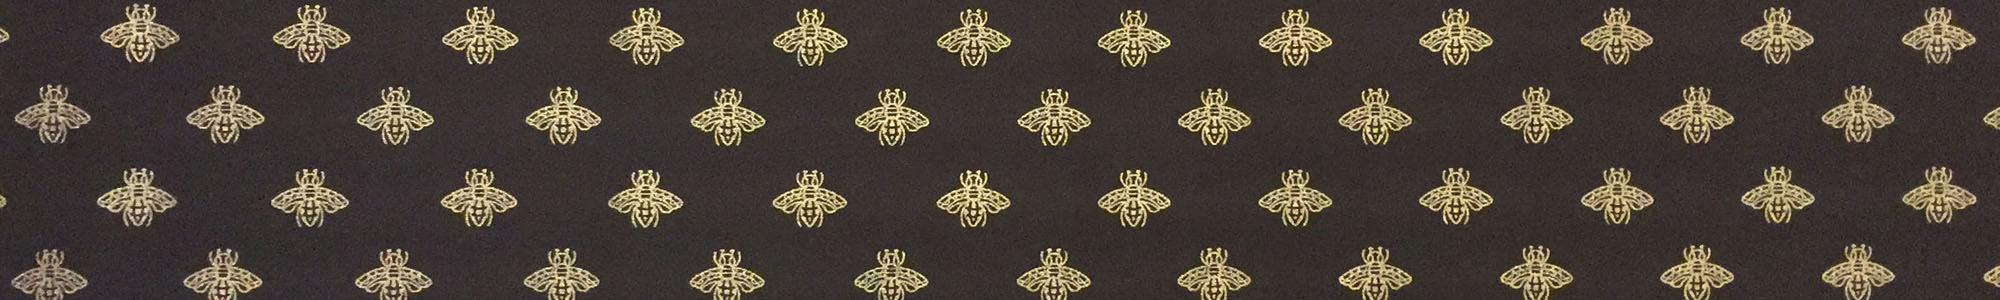 Banner 300 - Golden Bee